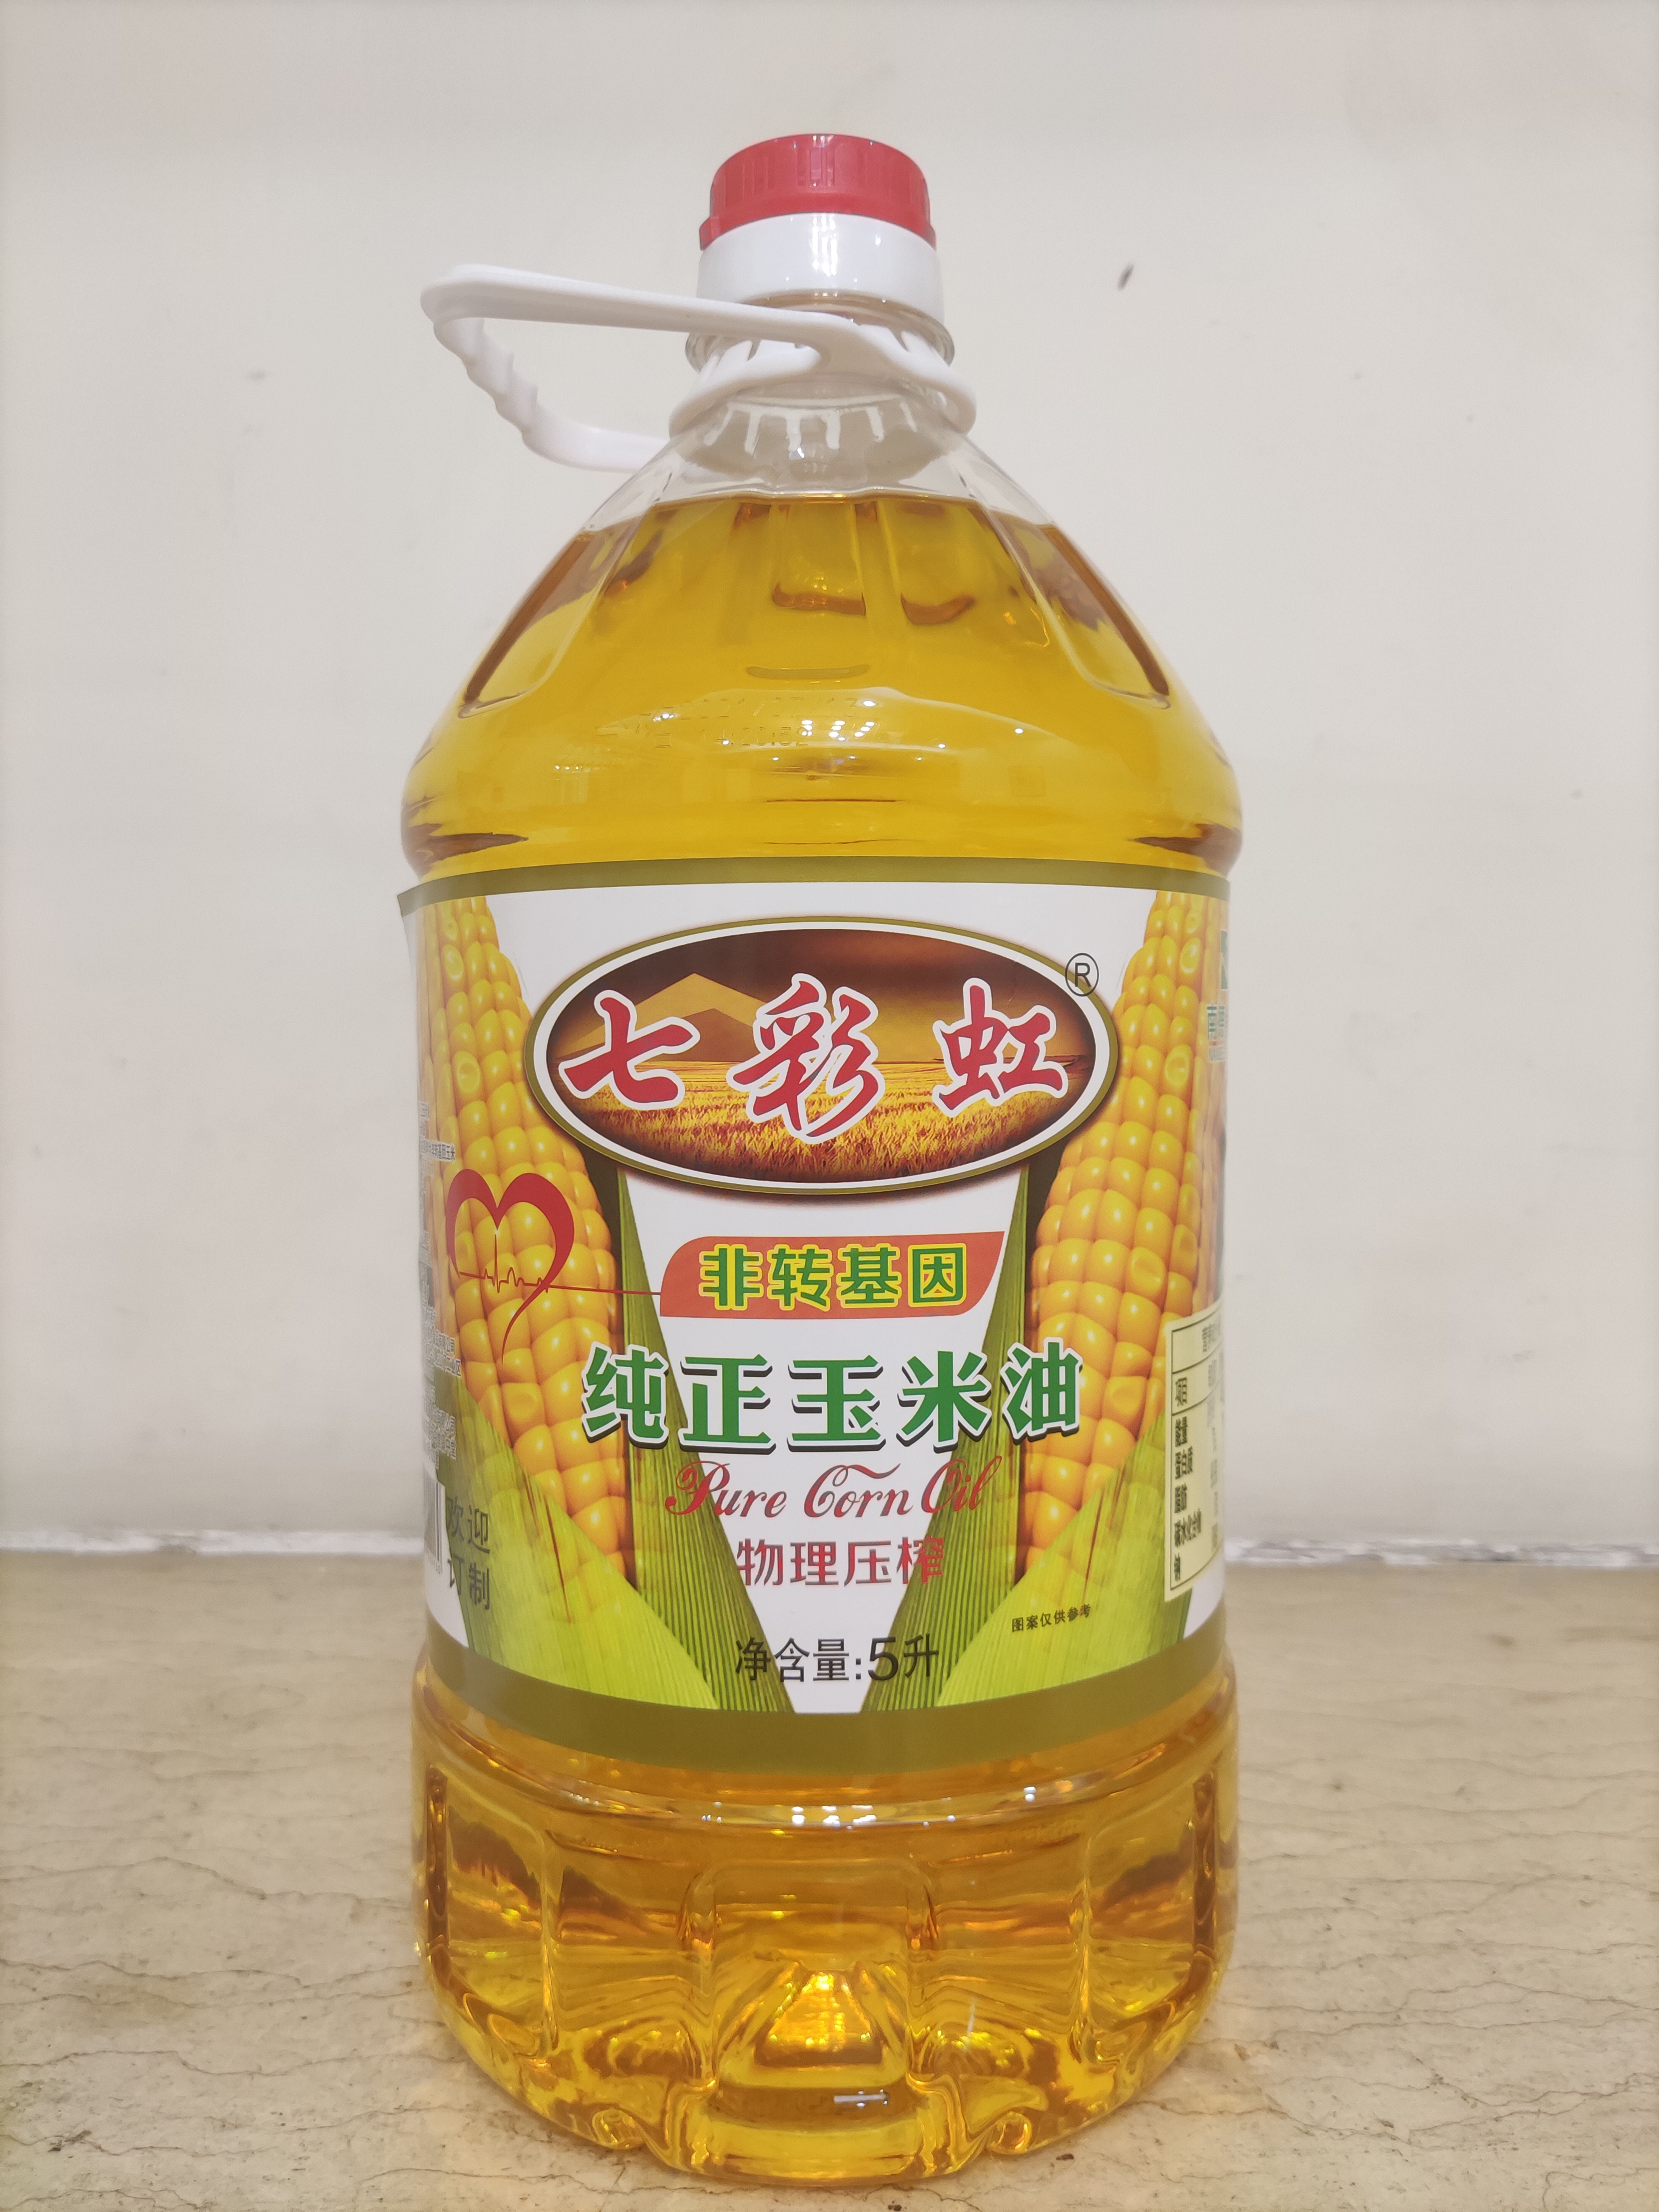 東莞市七彩虹 玉米油非轉基因好油玉米油怎么吃